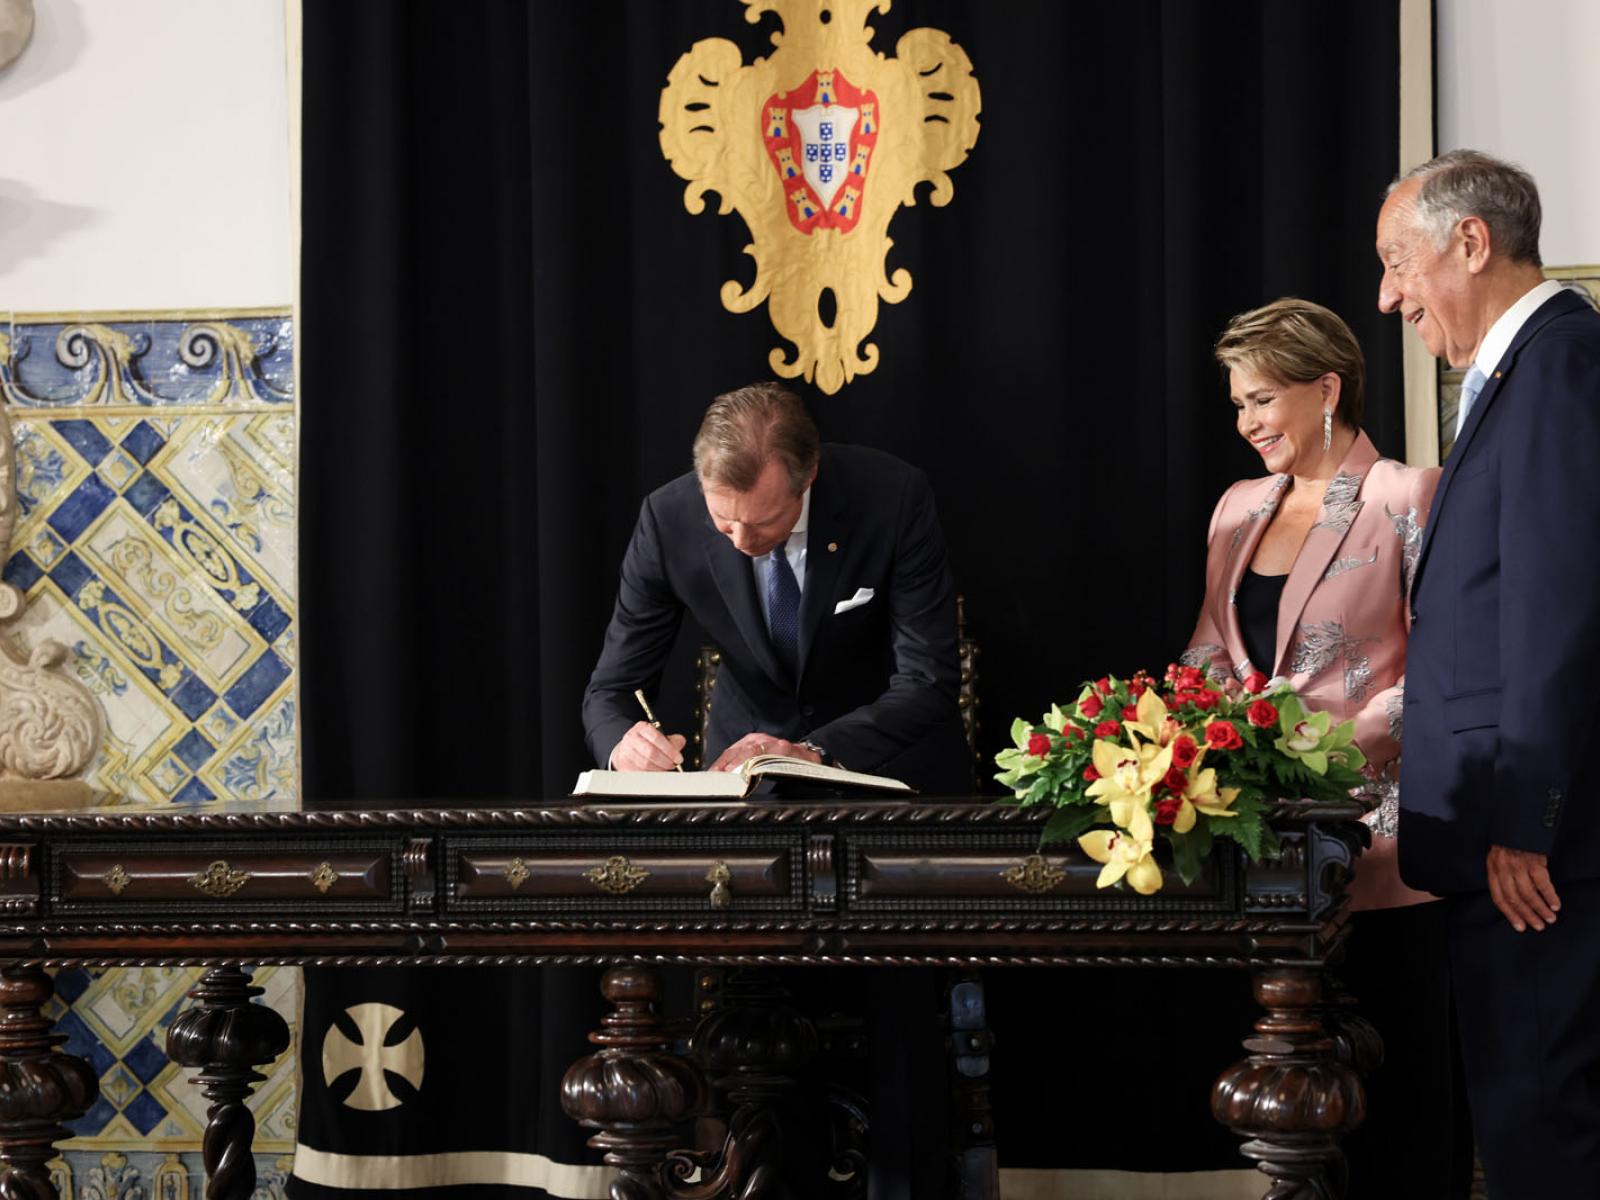 Le Grand-Duc signe un livre d'or